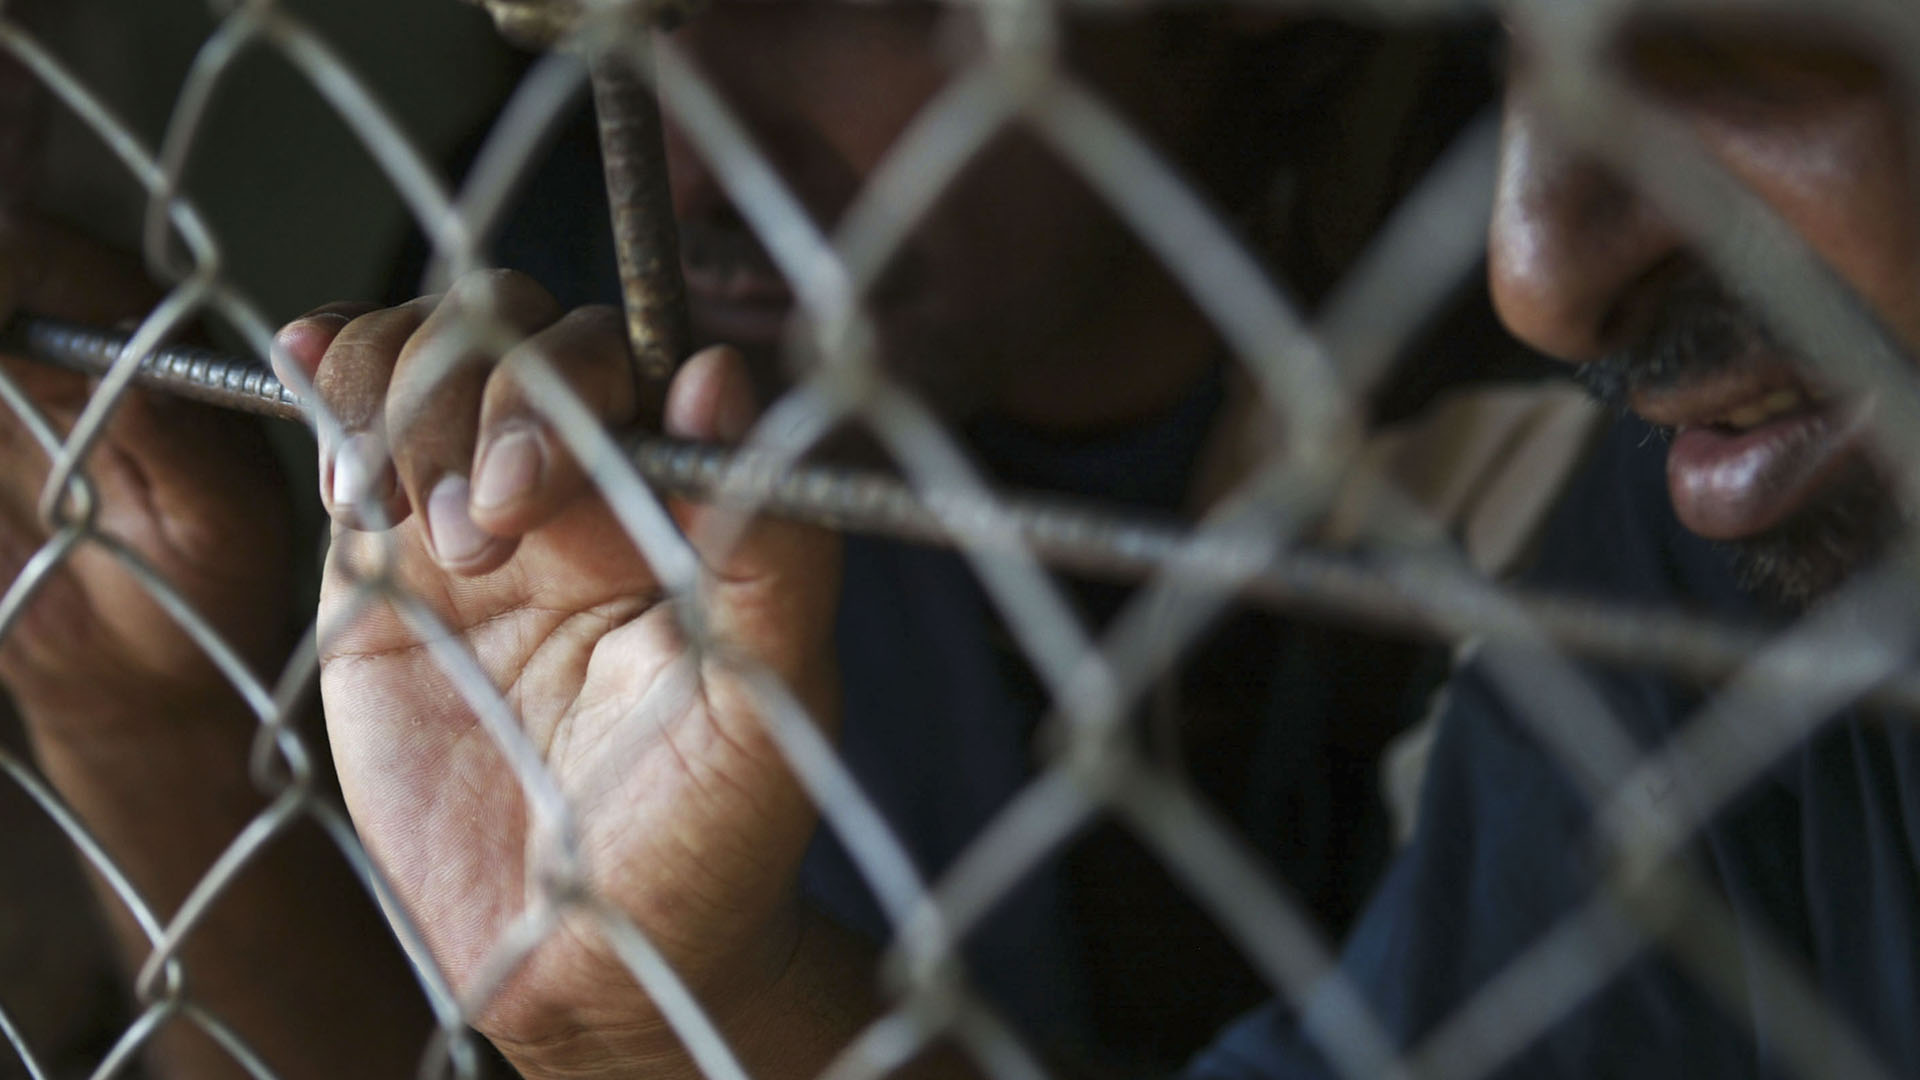 مطالبات بمسح طبي شامل للسجون المصرية بعد انتشار الأمراض